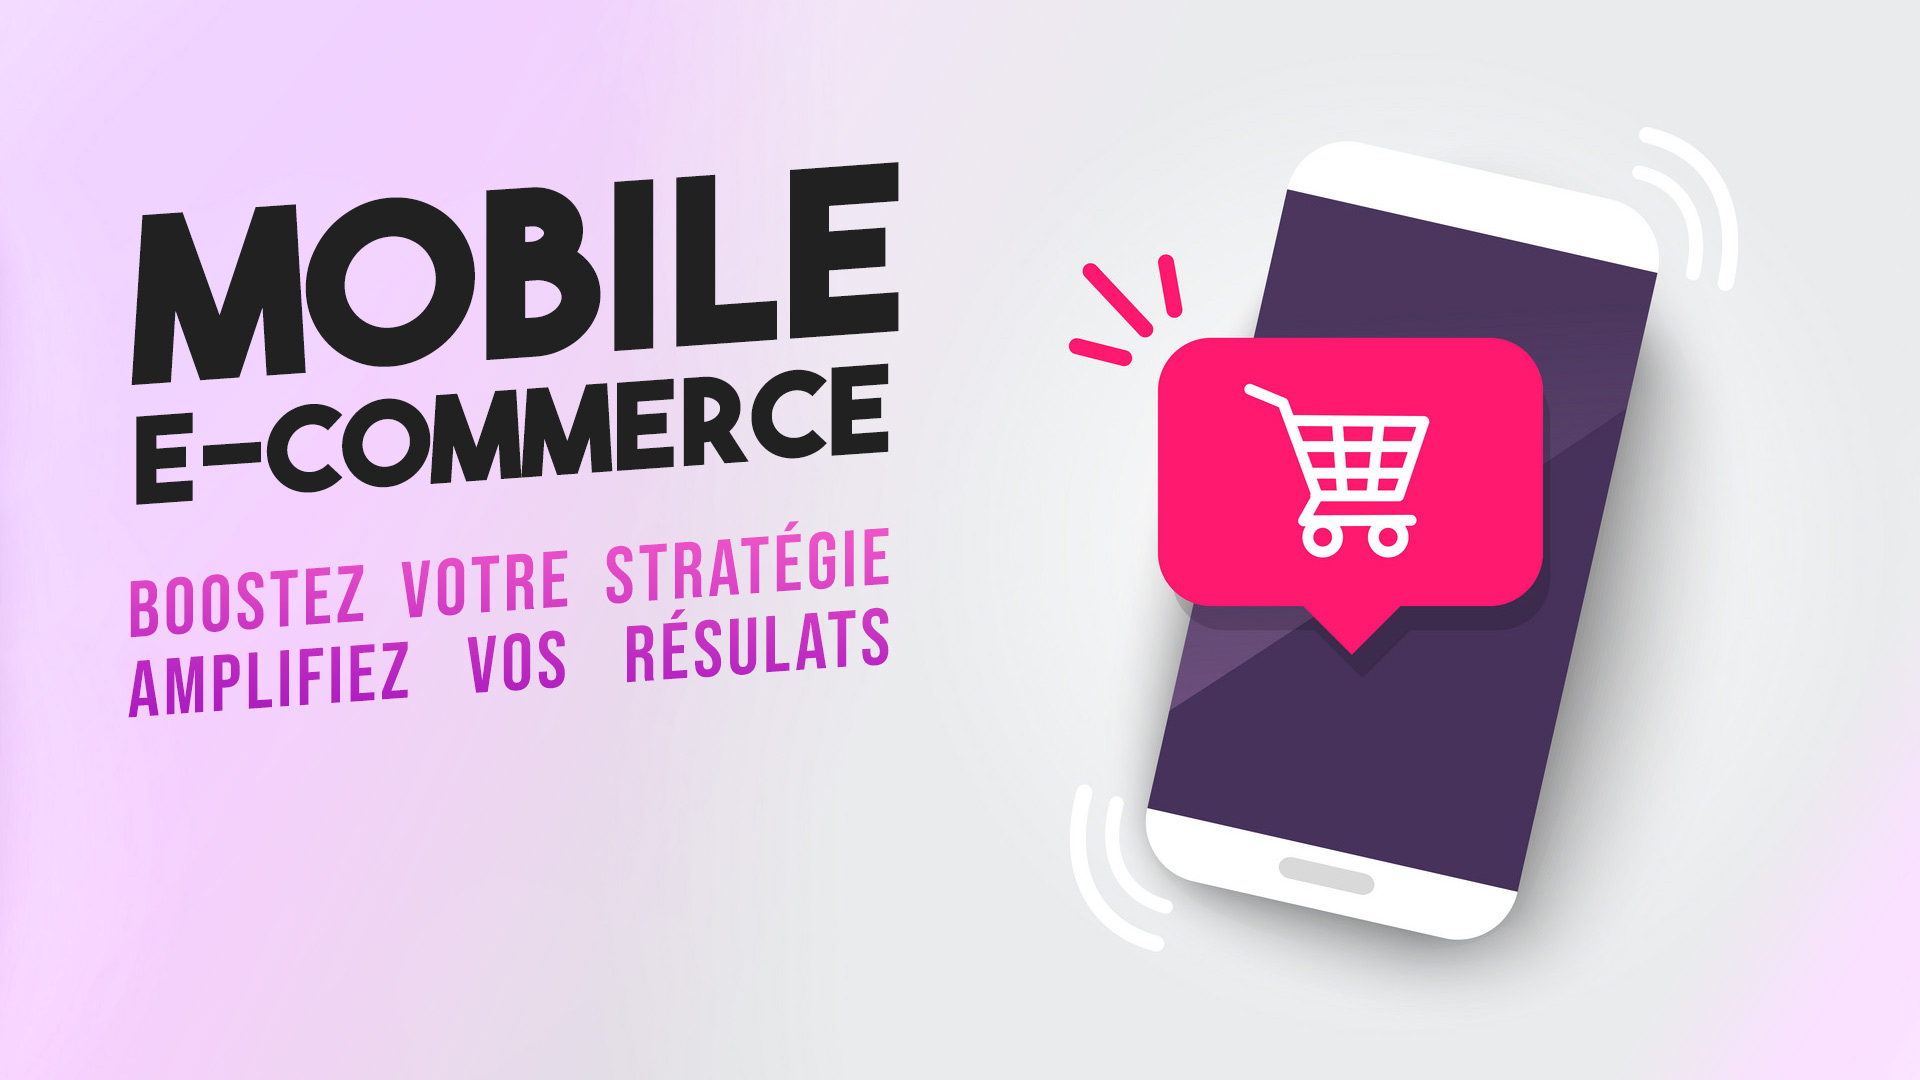 M-commerce : le poids du mobile dans votre stratégie marketing e-commerce 2020